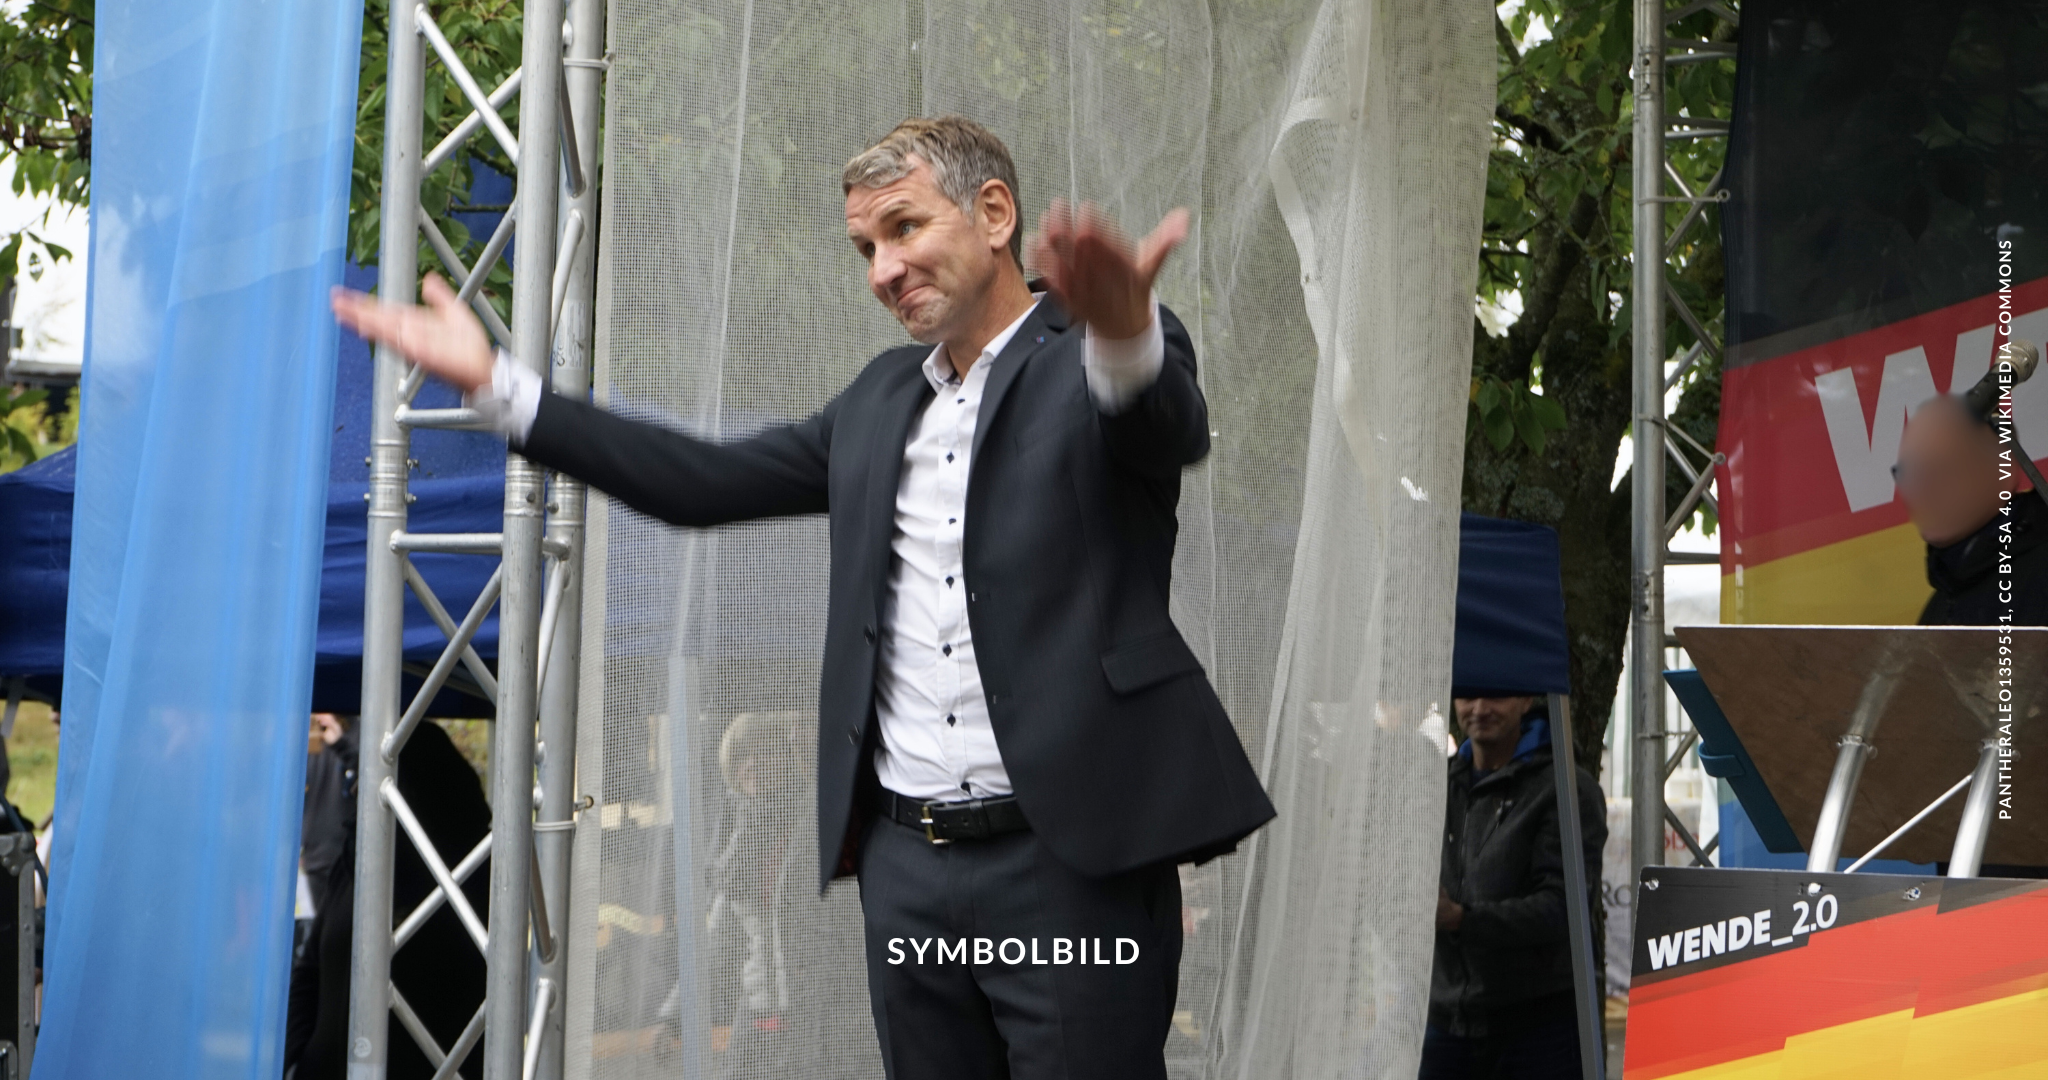 Das Bild zeigt Björn Höcke, der auf einer Bühne steht und die Arme ausgestreckt hat. Im Hintergrund sind Teile von Bannern oder Schildern zu sehen. Björn Höcke verurteilt Symbolbild